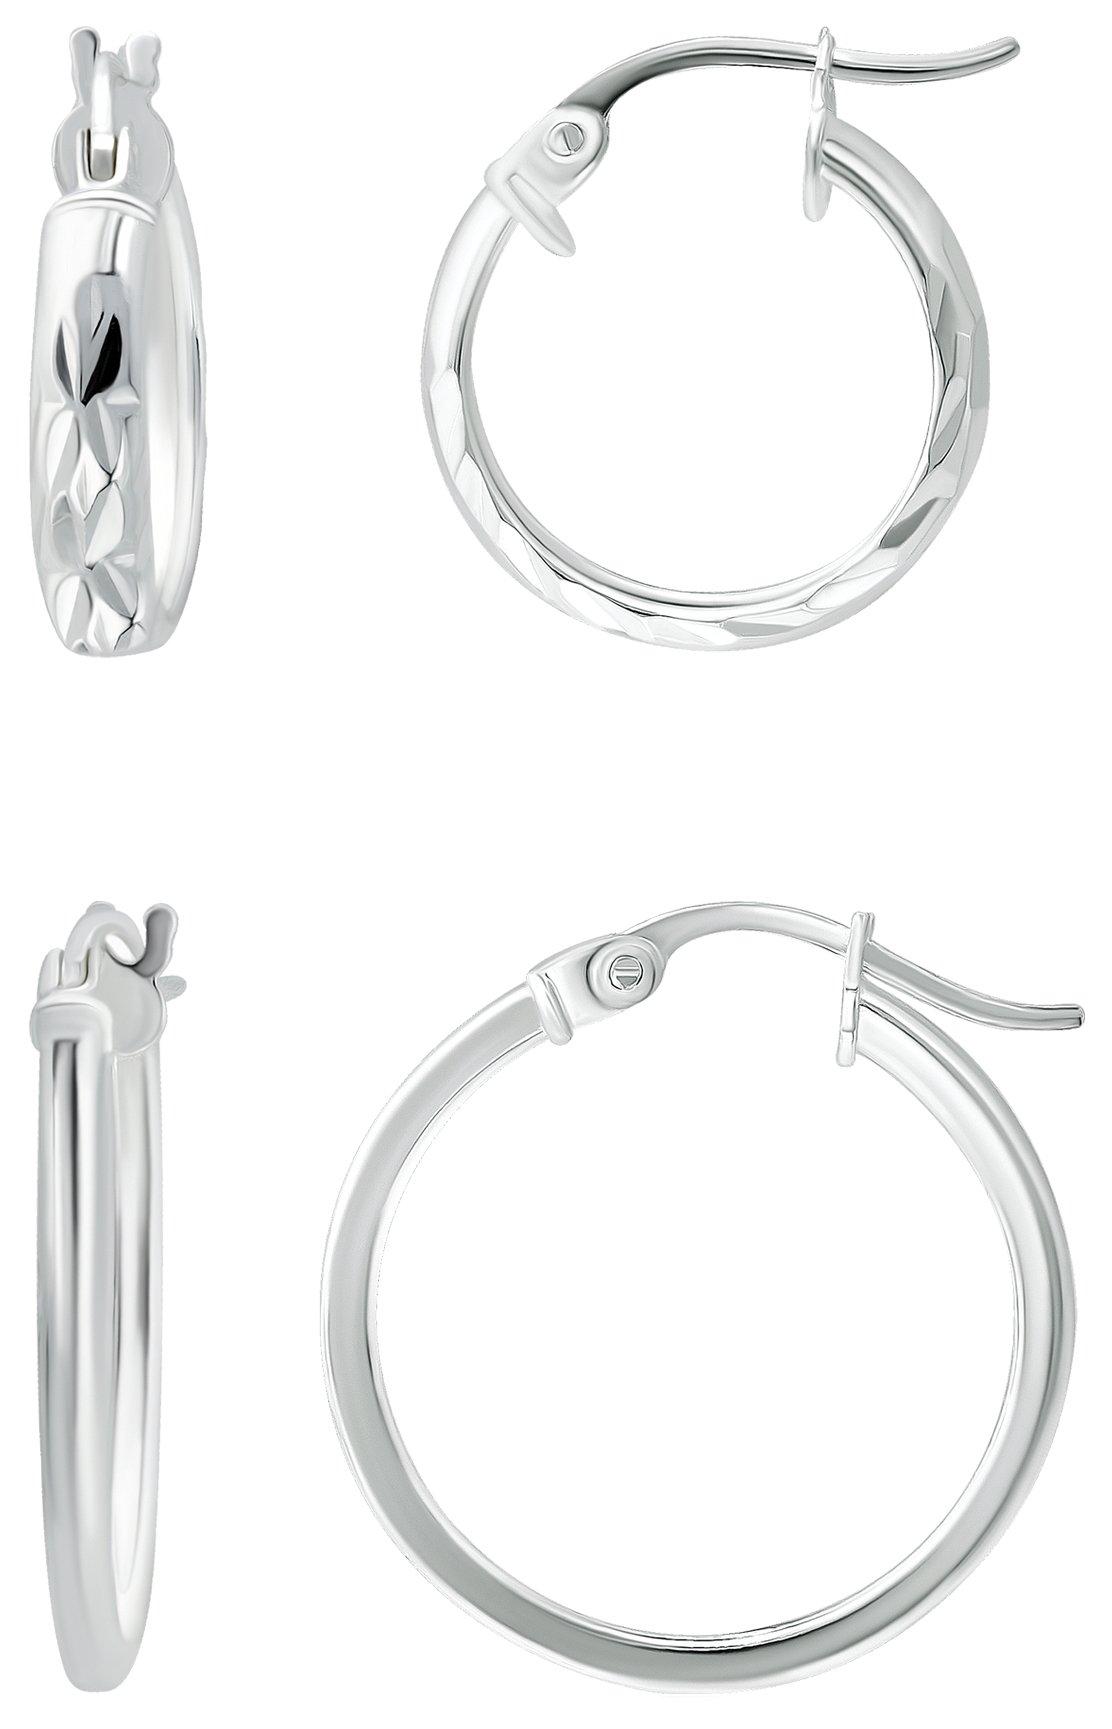 2-Pc. Silver Tone Hoops Earring Set